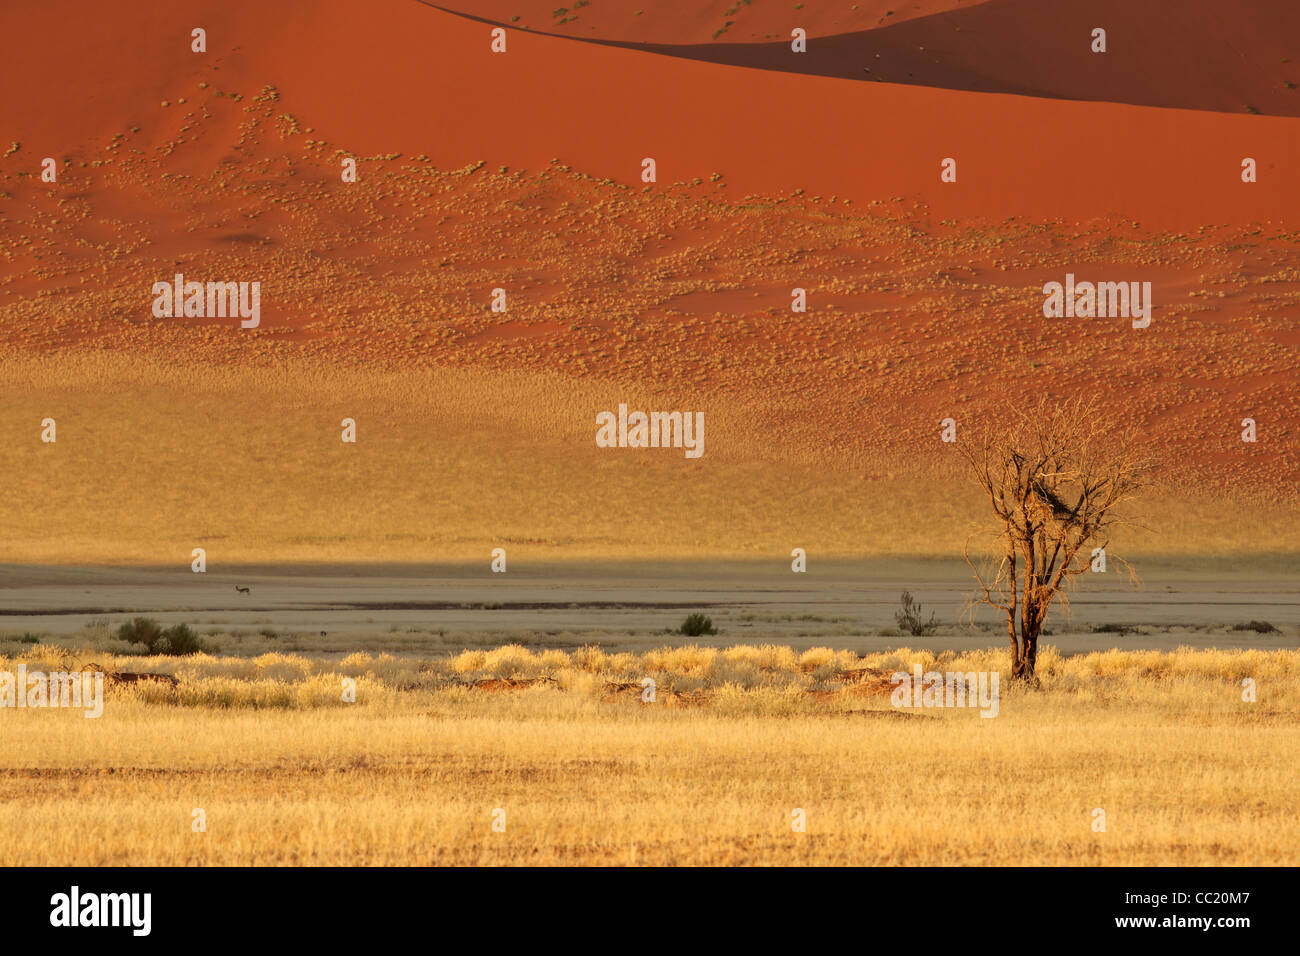 Paysage désertique avec des herbes, des dunes de sable rouge et un Africain Acacia, Sossusvlei, Namibie, Afrique du Sud Banque D'Images